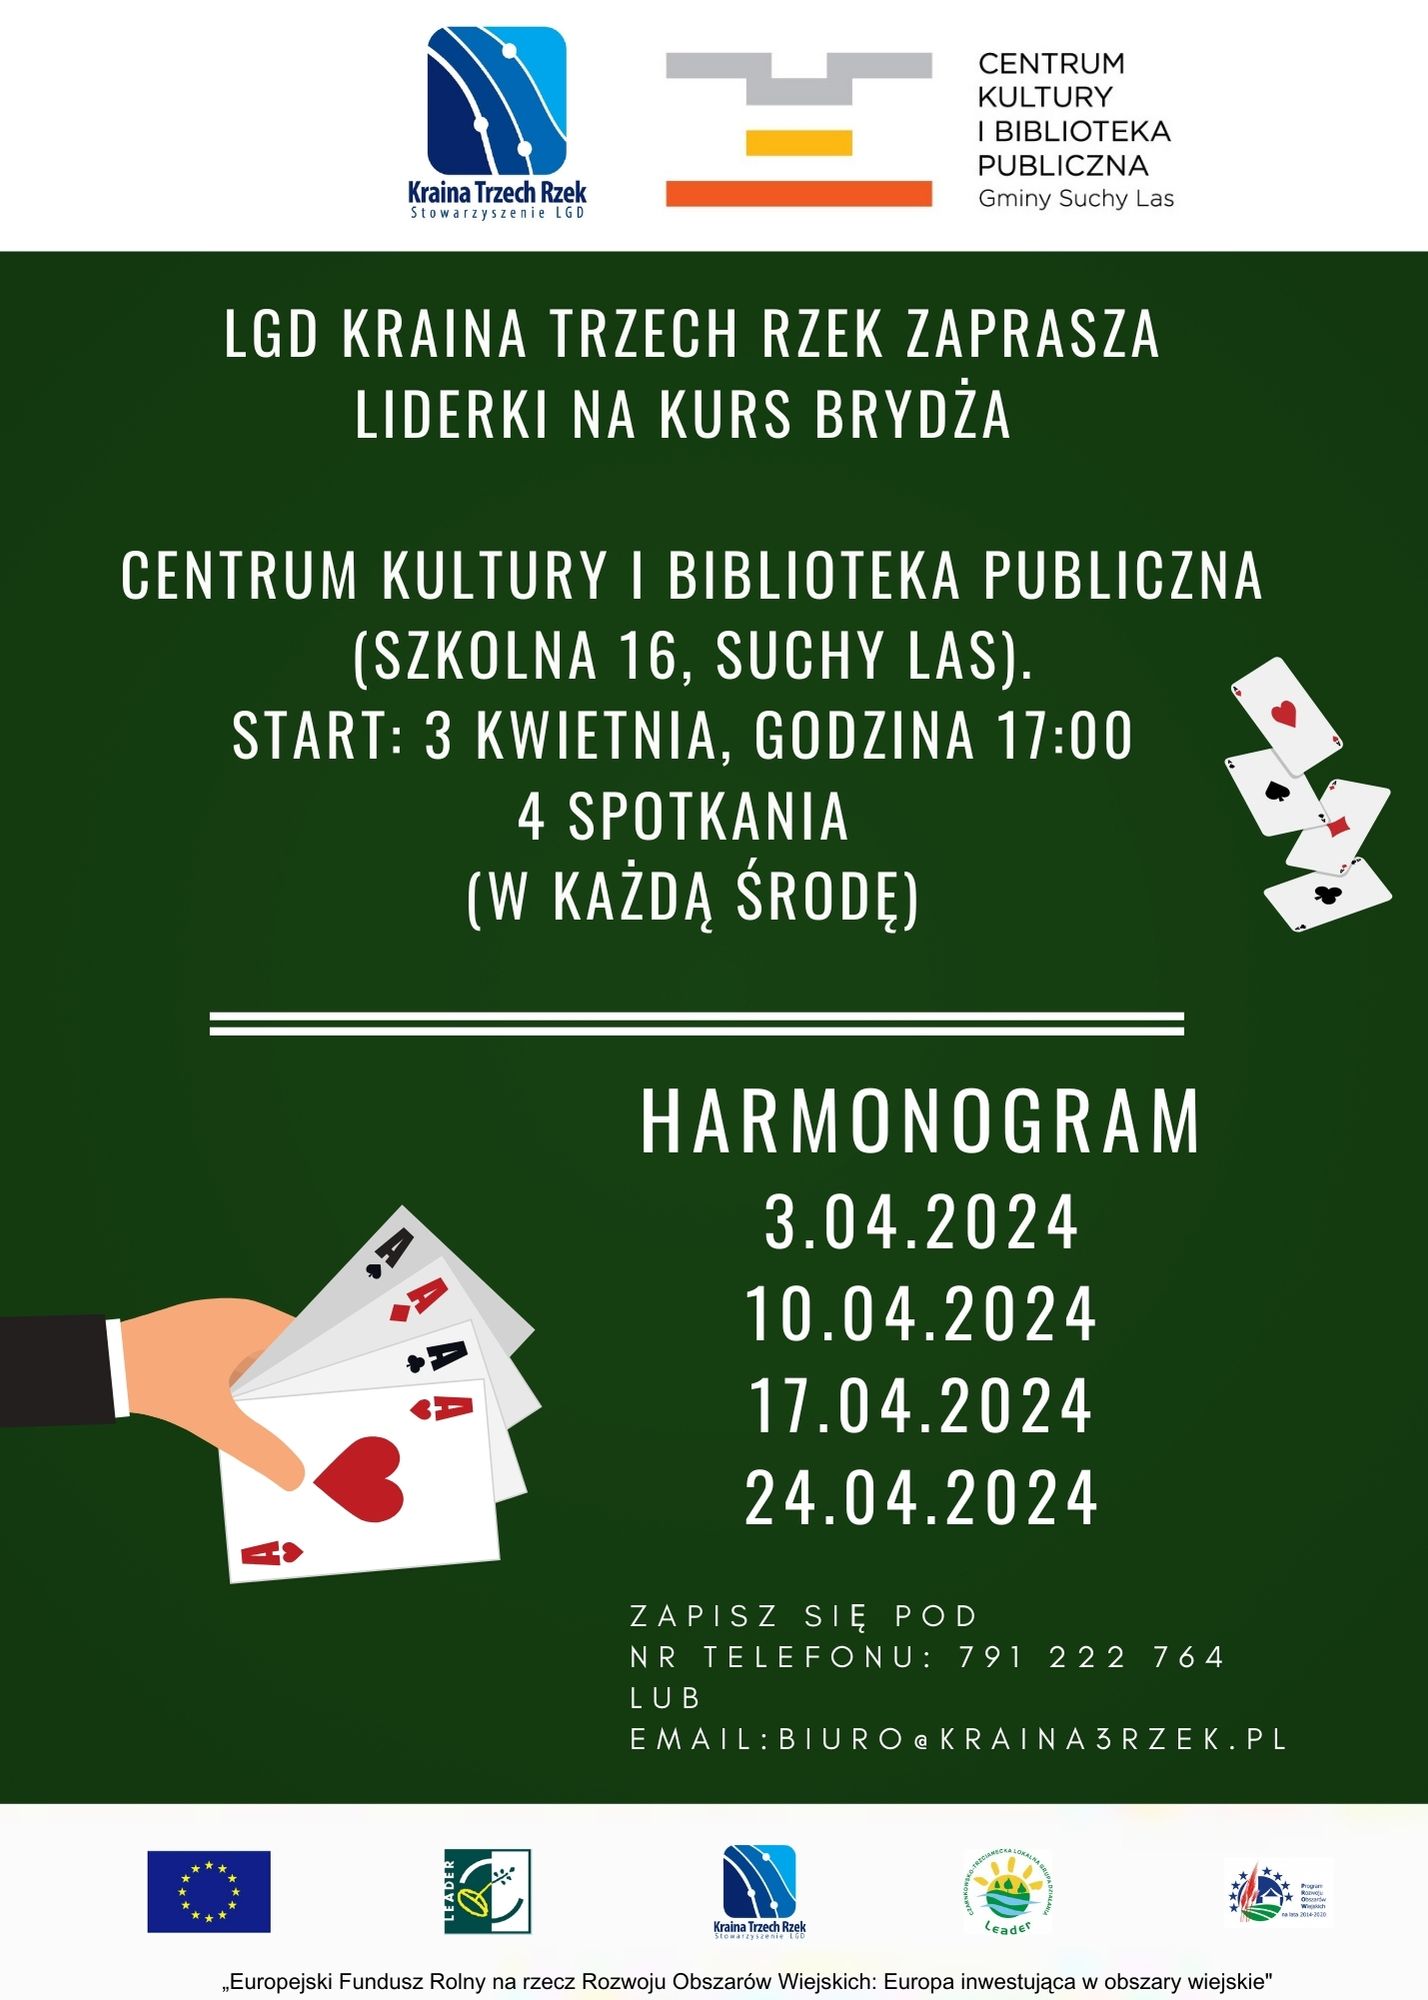 Poker Table Cards Casino Night Invitation Portrait 002 - Darmowy kurs brydża w Suchym Lesie dla Pań